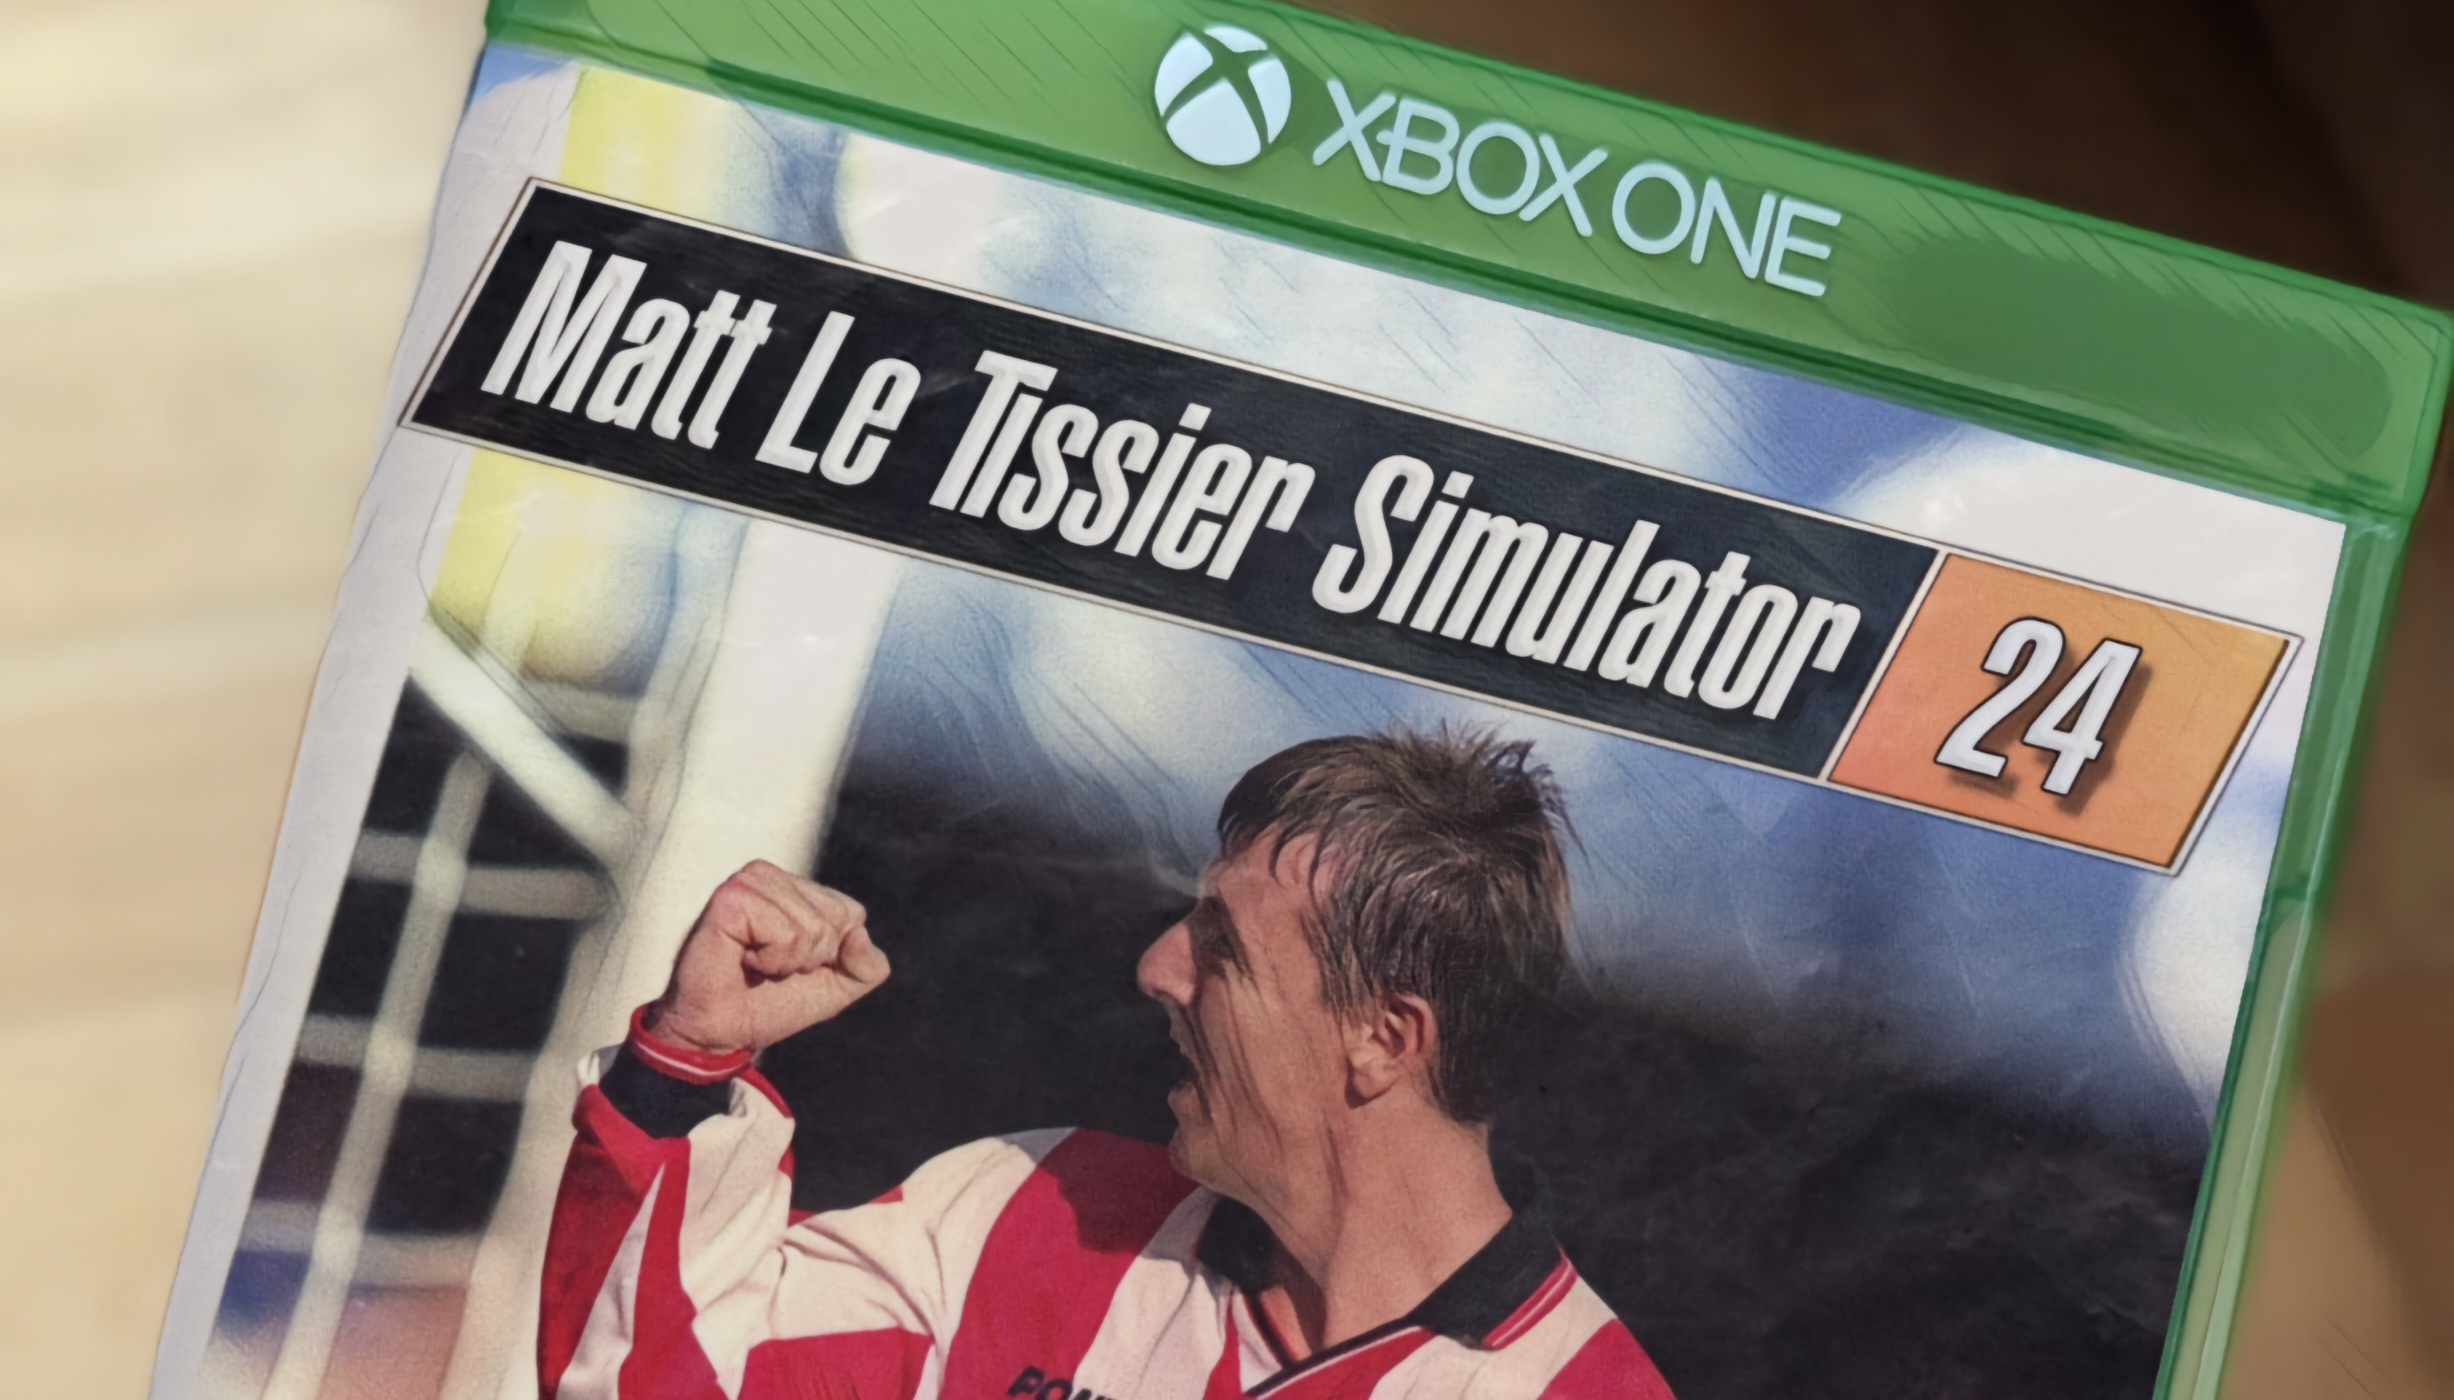 Matt Le Tissier Simulator 24 mock video game cover by Johnny Sharples.